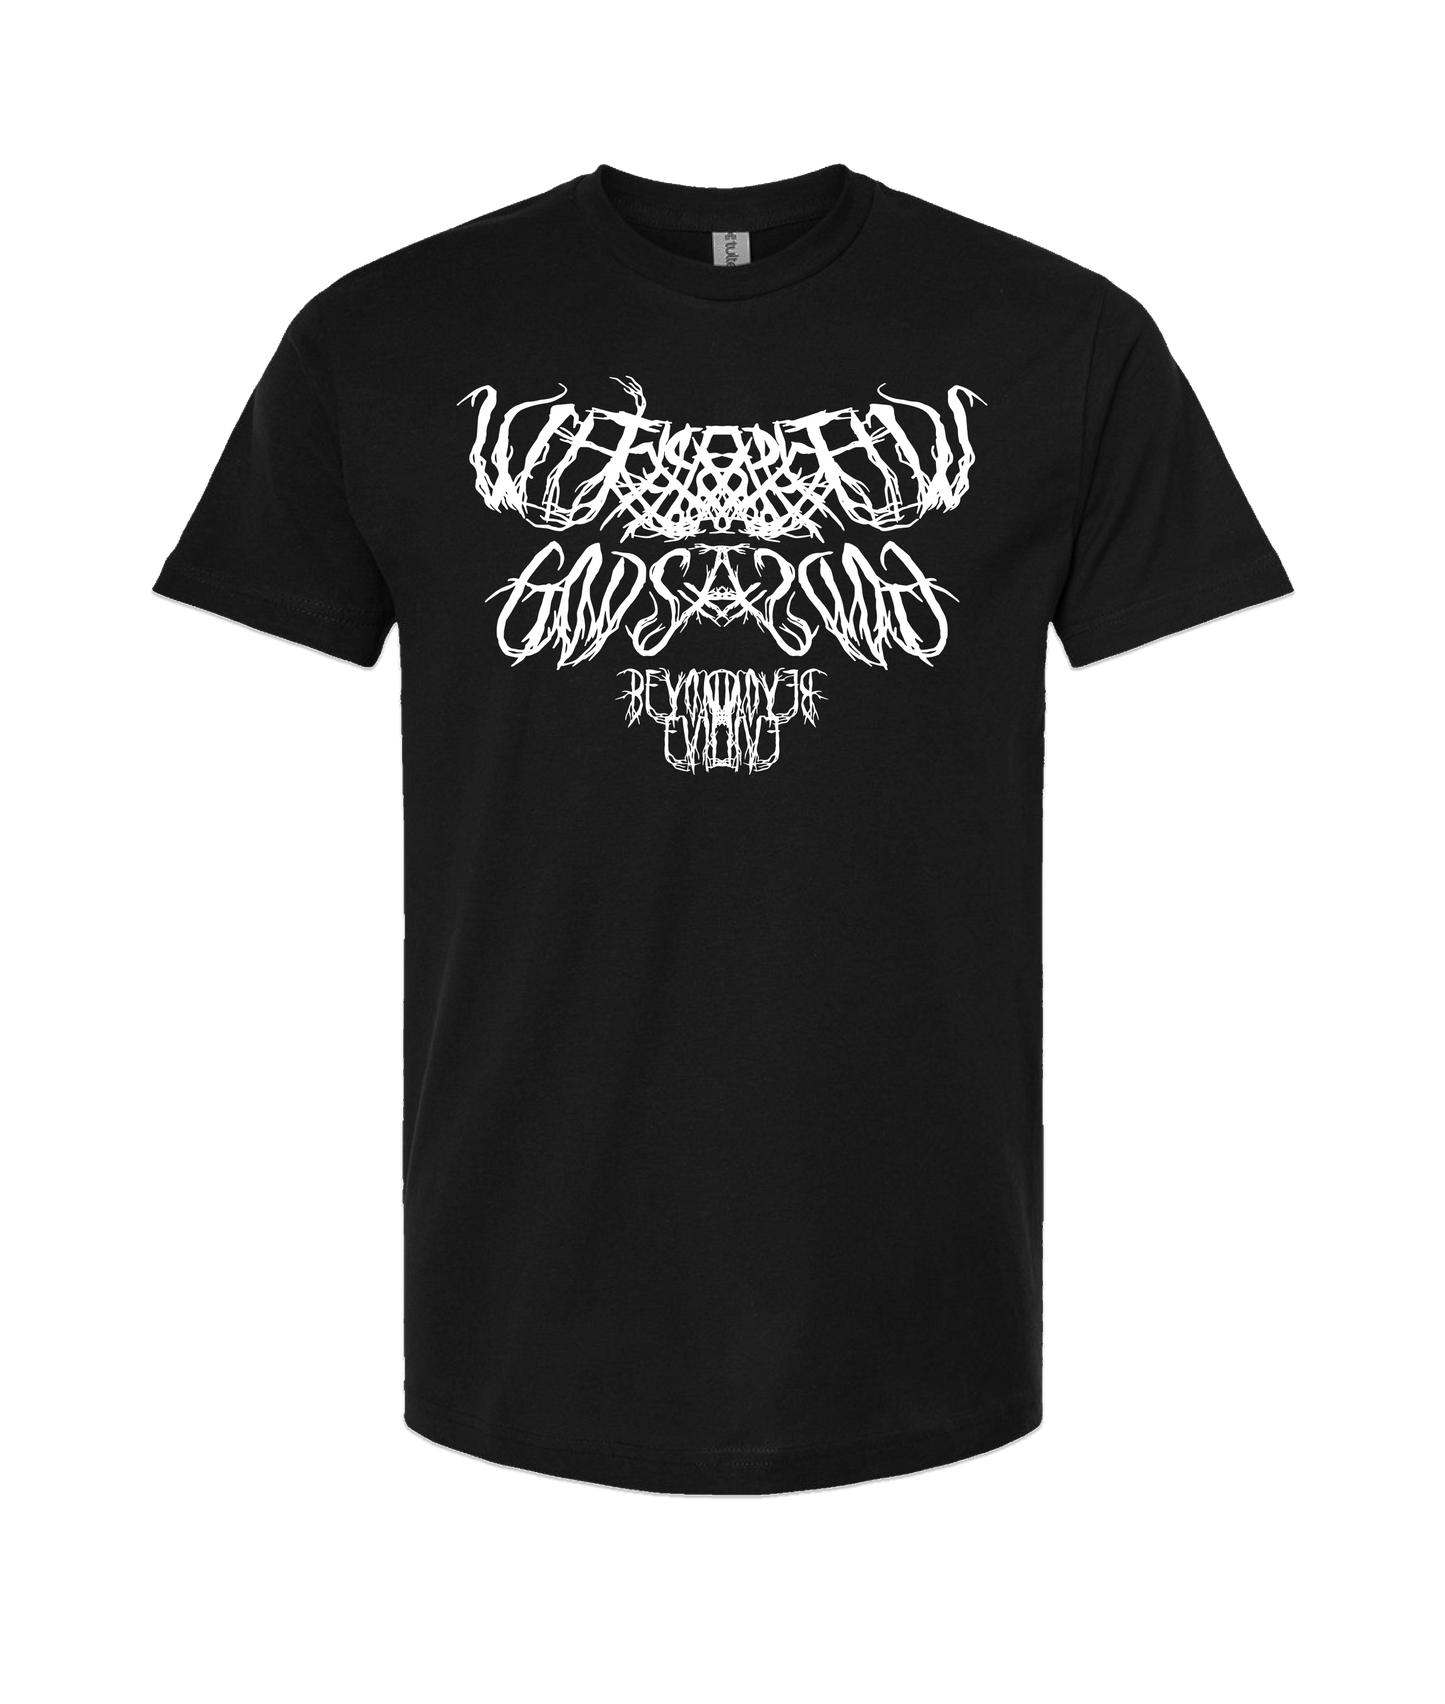 Withered Gods - Logo - Black T Shirt